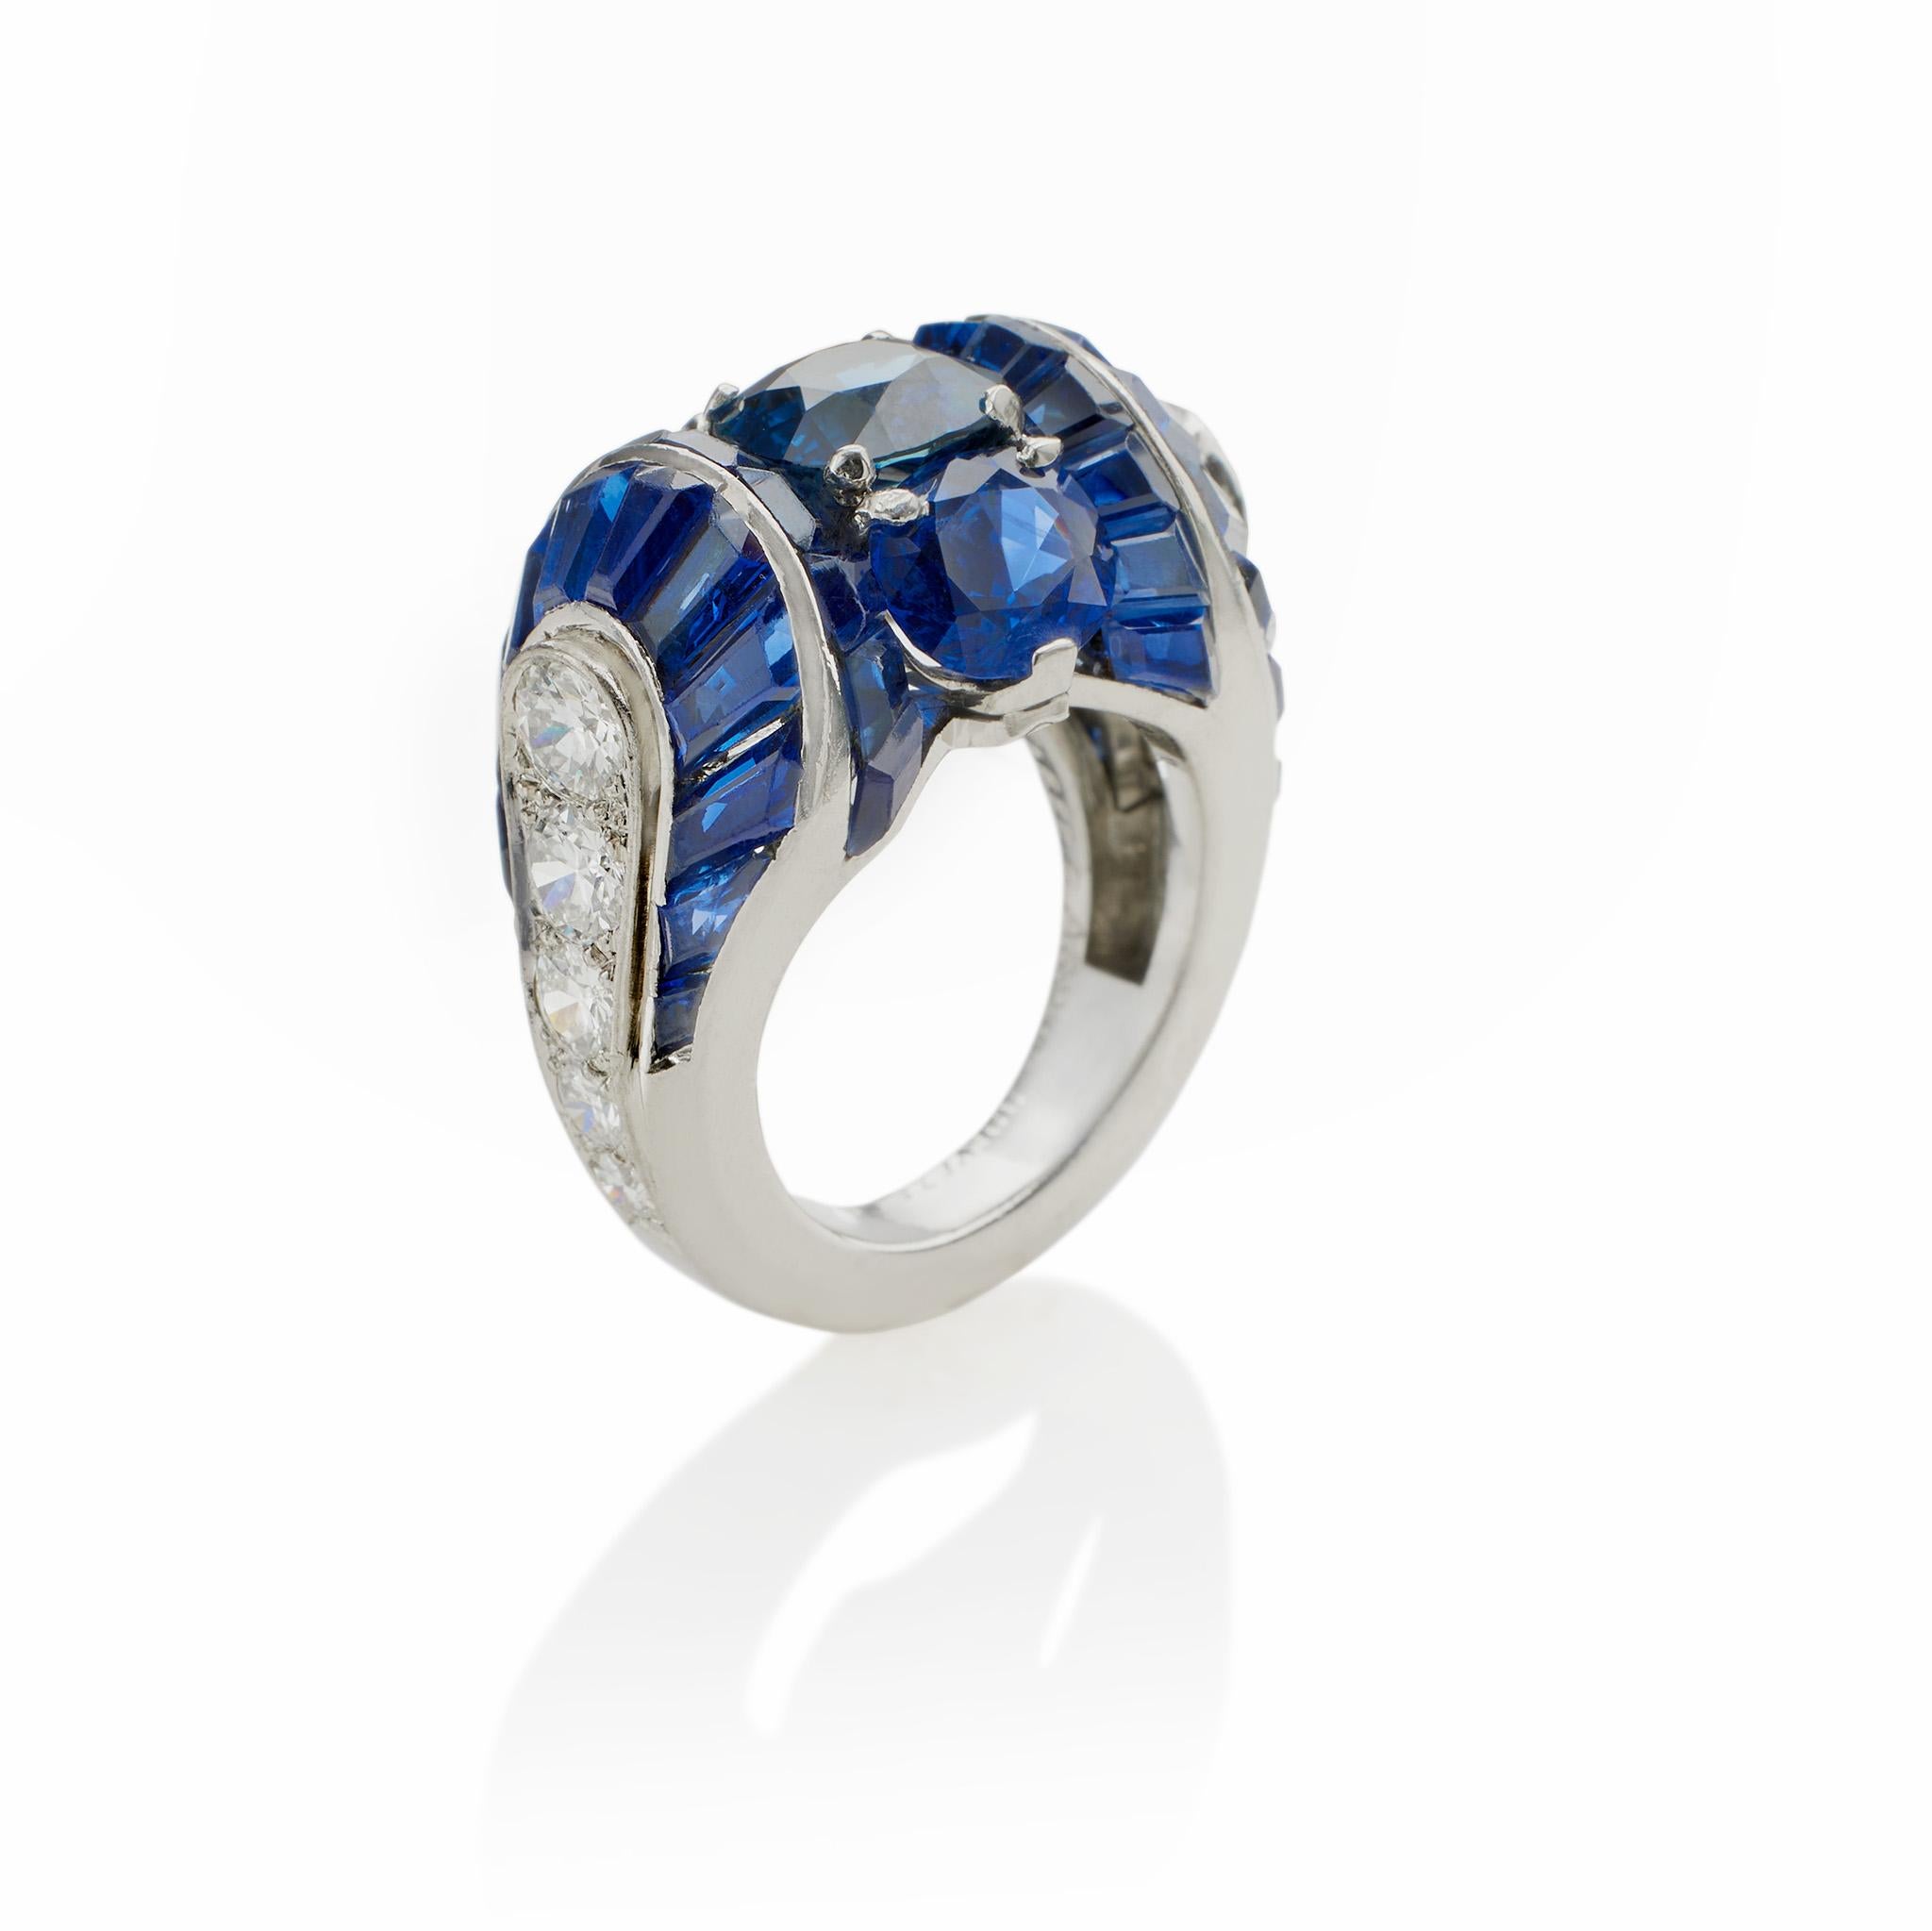 Dieser Ring mit einem Burma-Saphir und Diamanten wurde in den späten 1930er Jahren von Van Cleef & Arpels Paris entworfen und ist in Platin gefasst. In der Mitte des Rings befinden sich drei vertikal gefasste Saphire im Kissenschliff mit einem